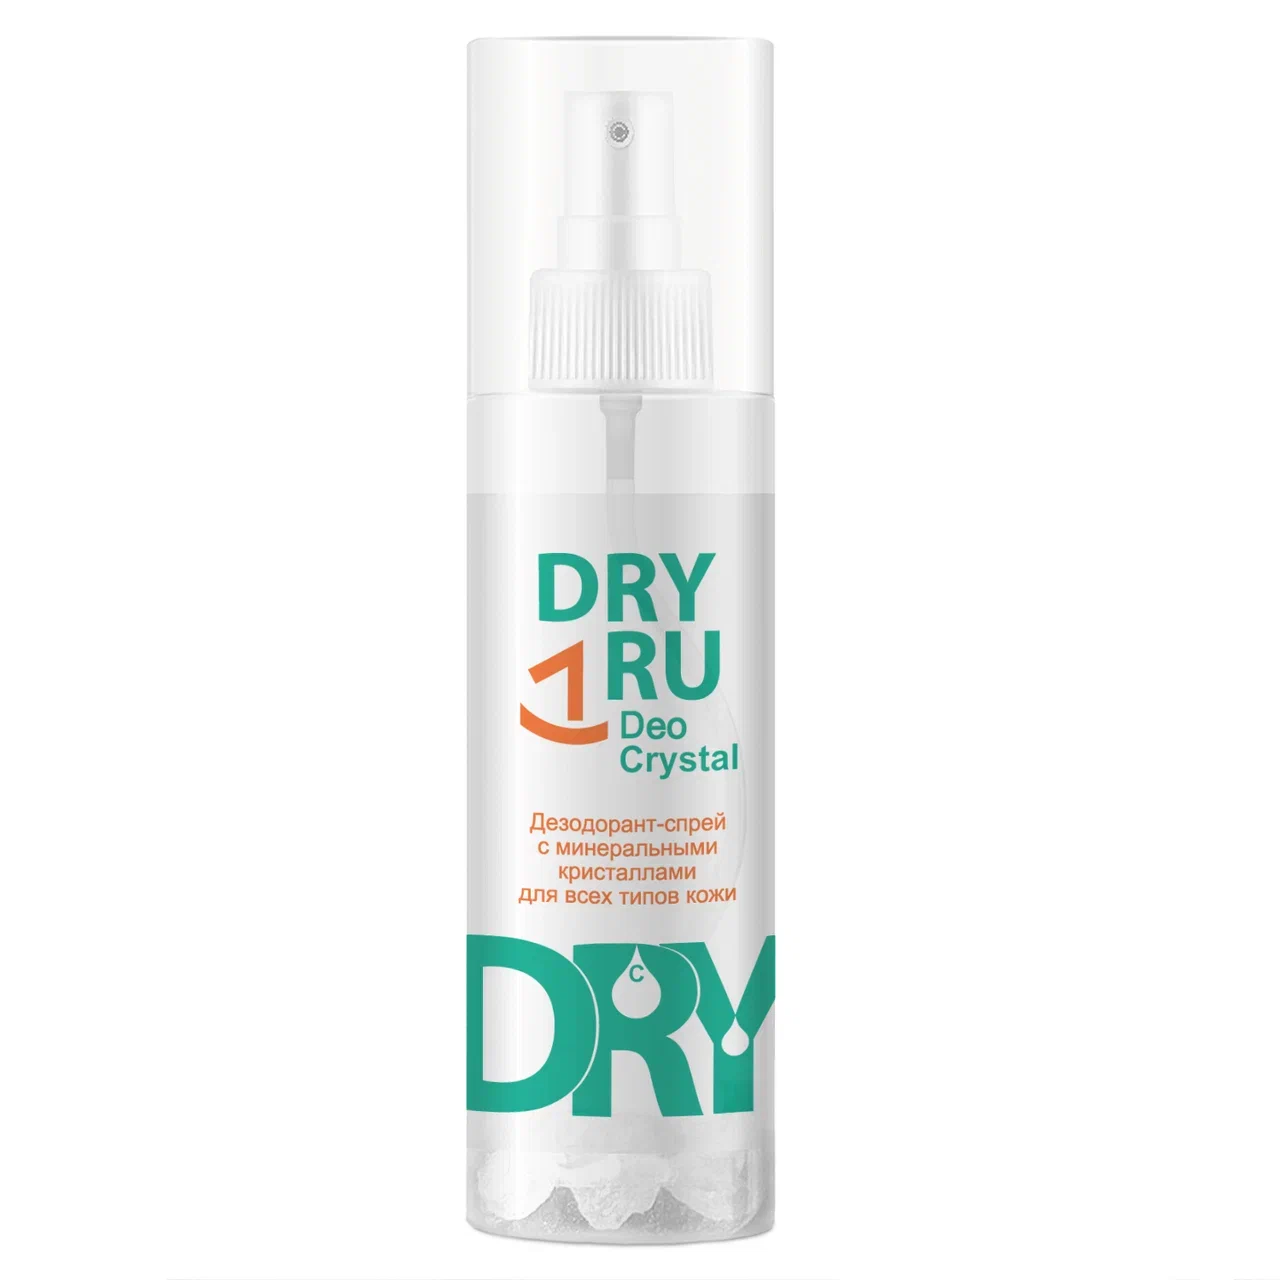 Дезодорант DRY RU Deo Crystal спрей, от пота и запаха, для подмышек, рук и ног 40 г adarisa квасцовый дезодорант спрей без запаха нейтральный 100